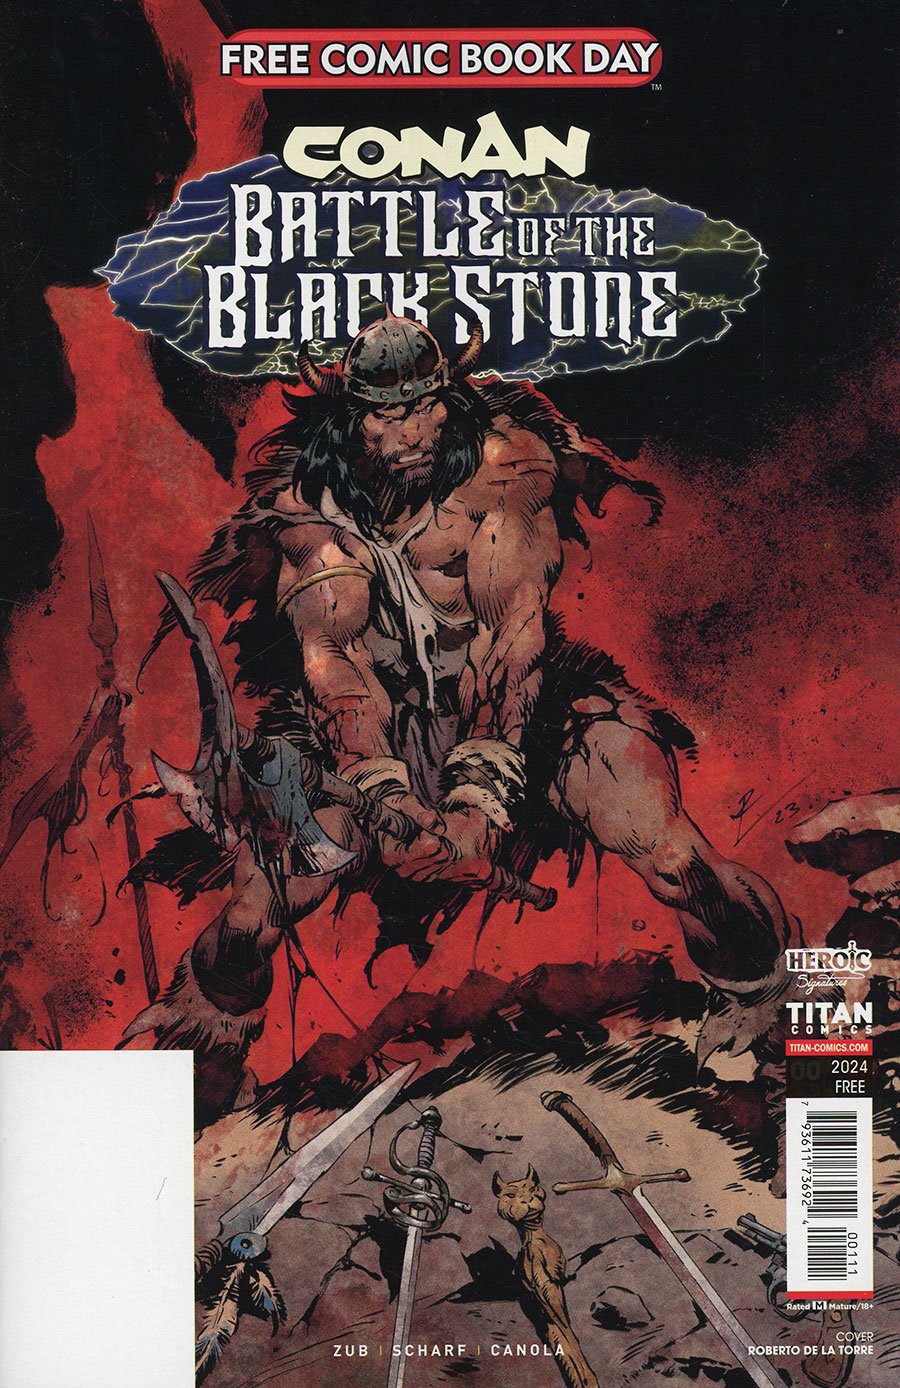 FCBD 2024 Conan Battle Of The Black Stone - FREE - Limit 1 Per Customer